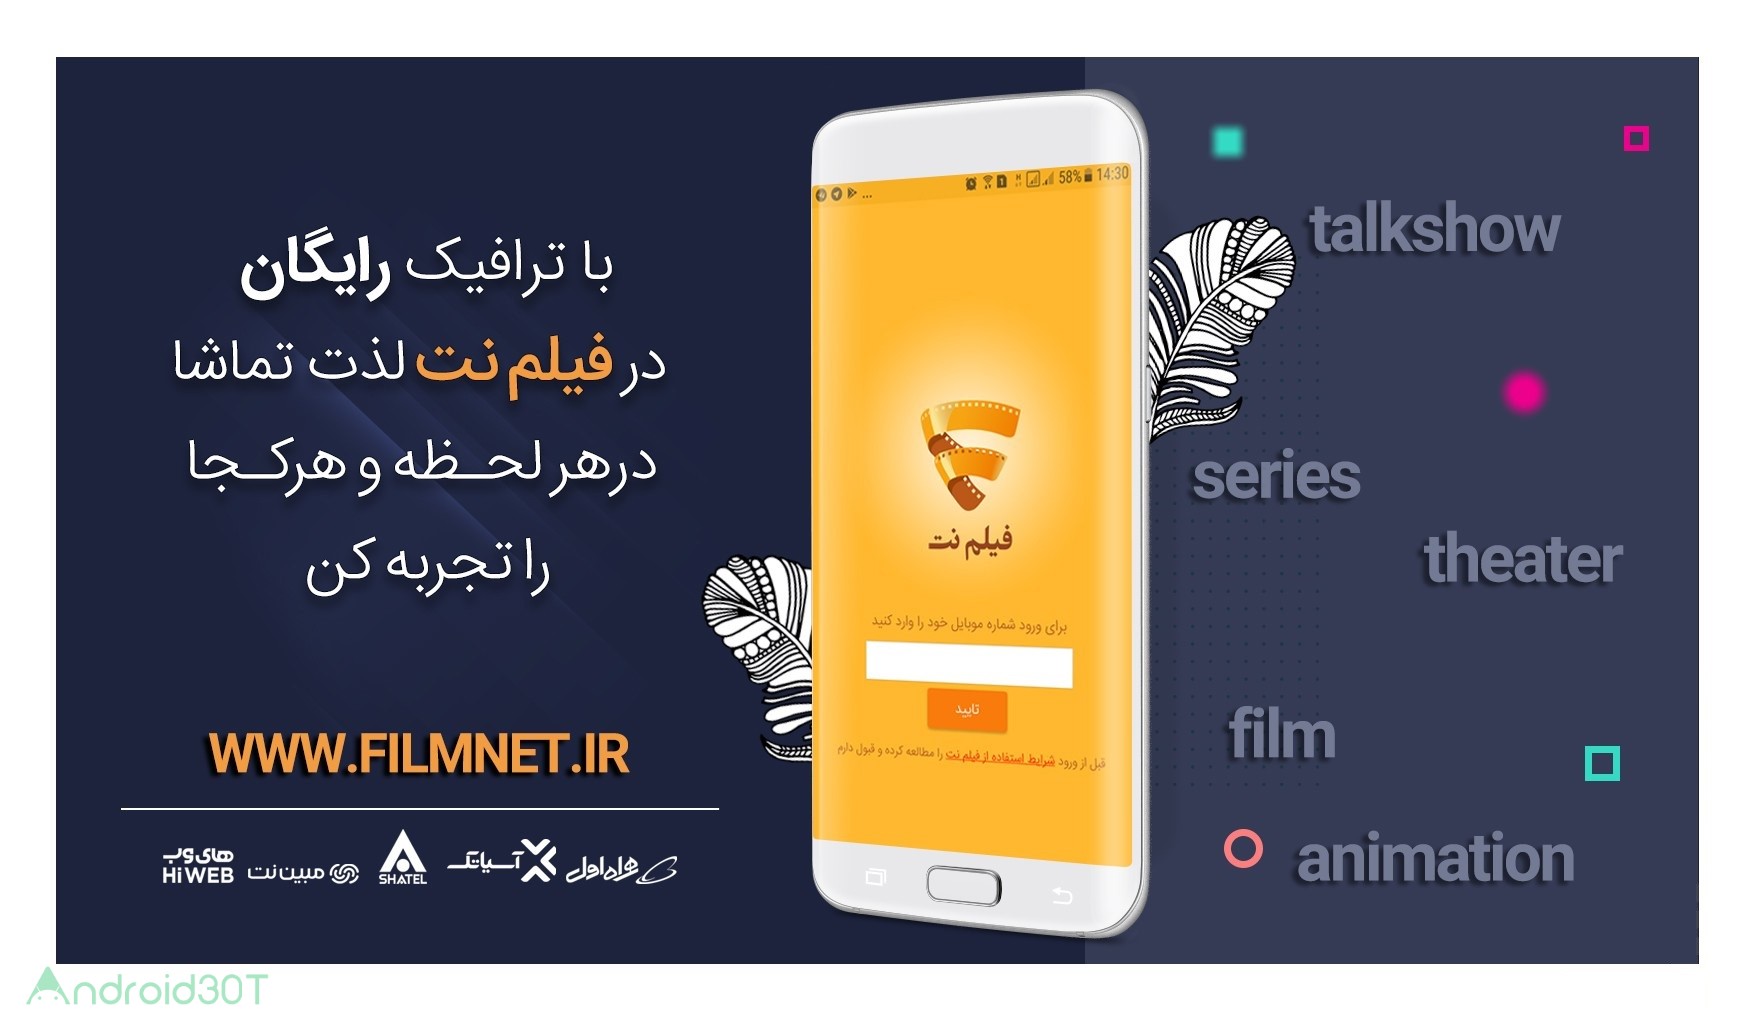 دانلود 1.1.0 Filmnet – اپلیکیشن دانلود فیلم و سریال، فیلم نت برای اندروید